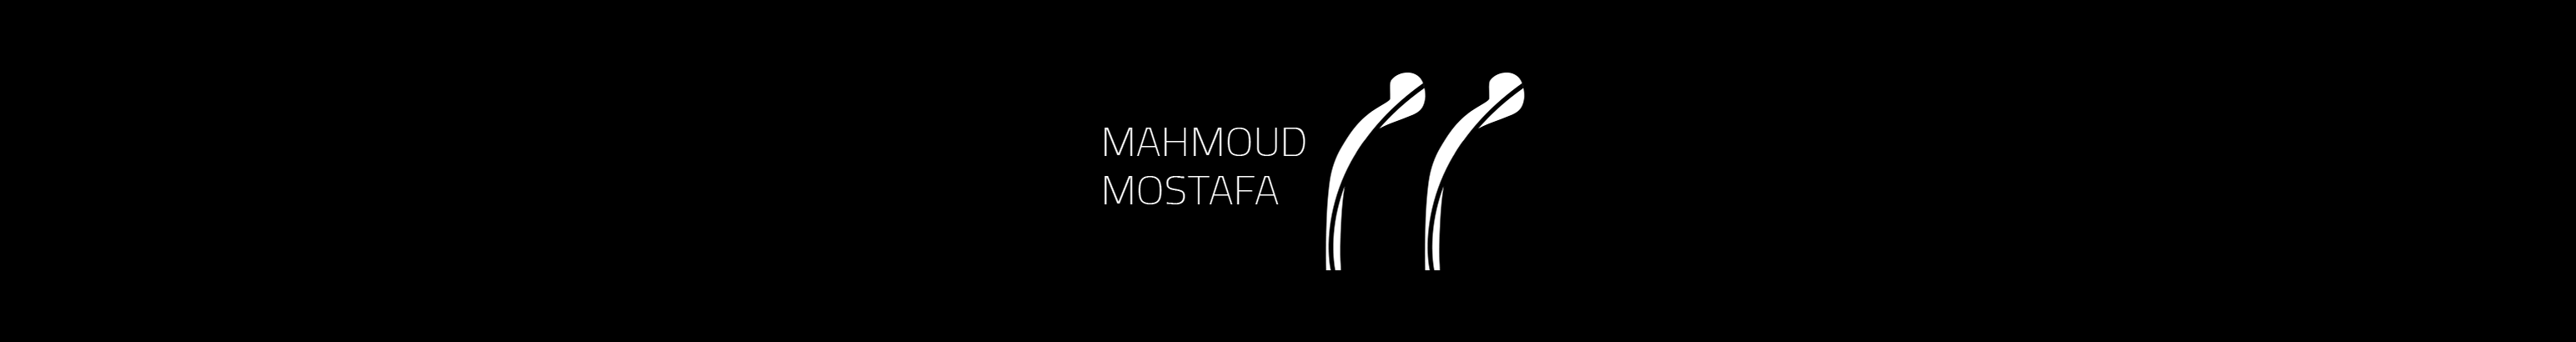 mahmoud mostafa のプロファイルバナー